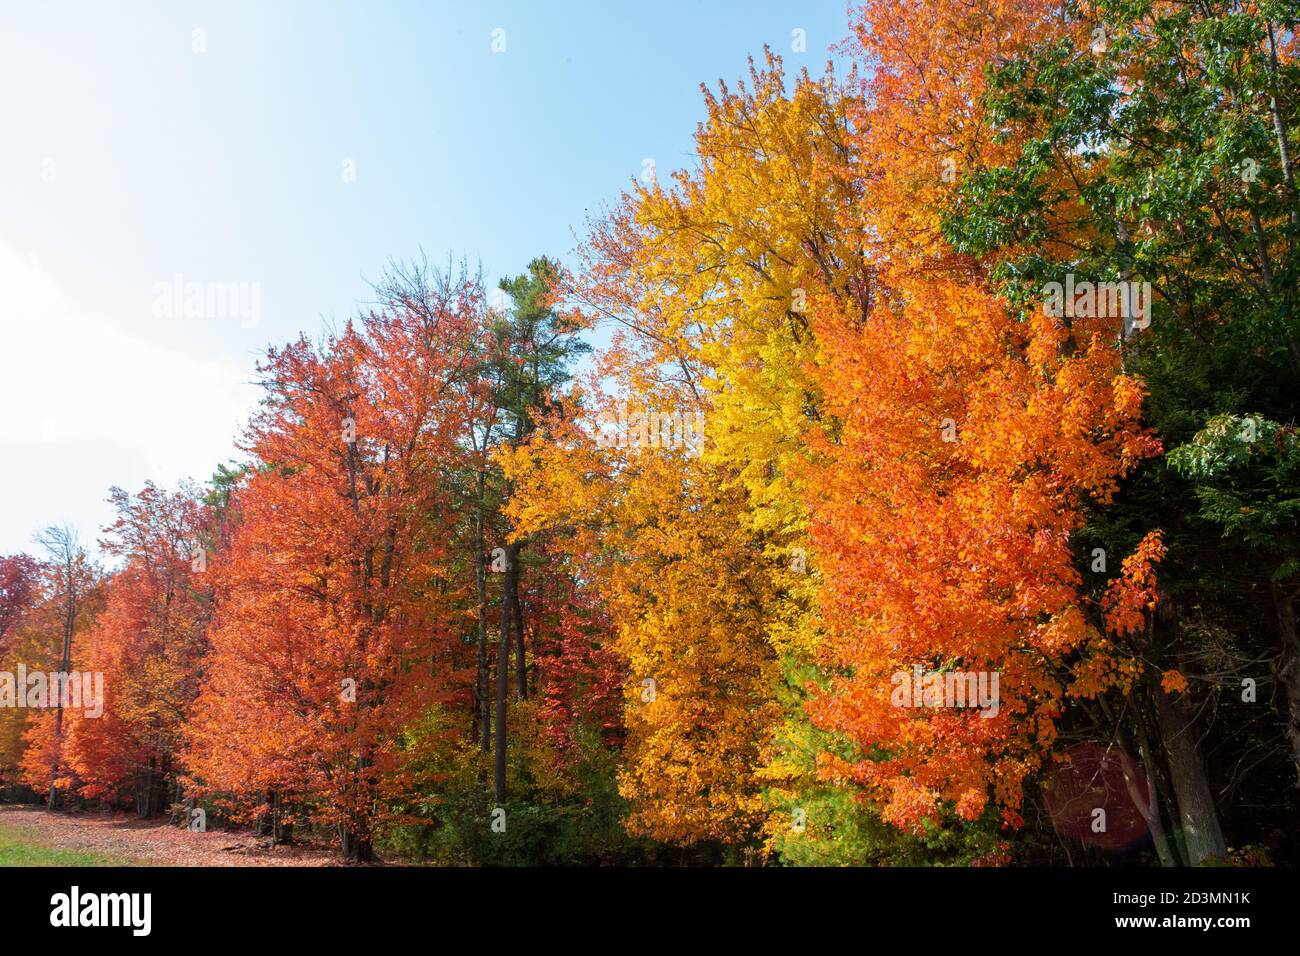 Maine Fall foliage 2020 Stock Photo